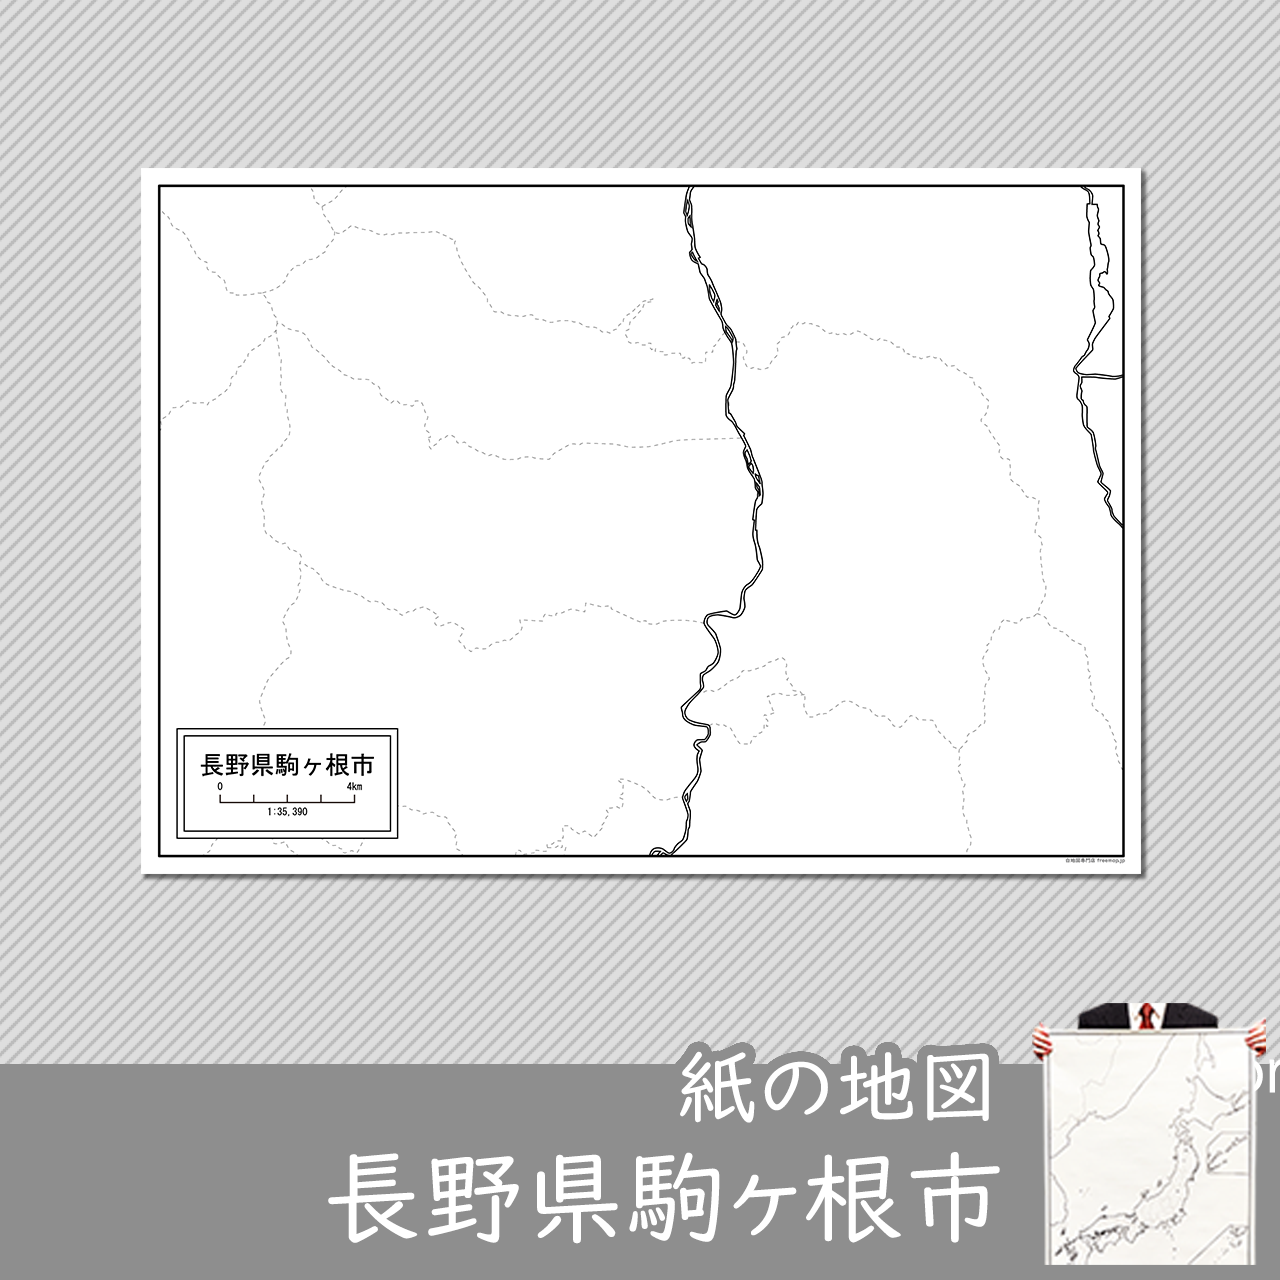 駒ヶ根市の紙の白地図のサムネイル